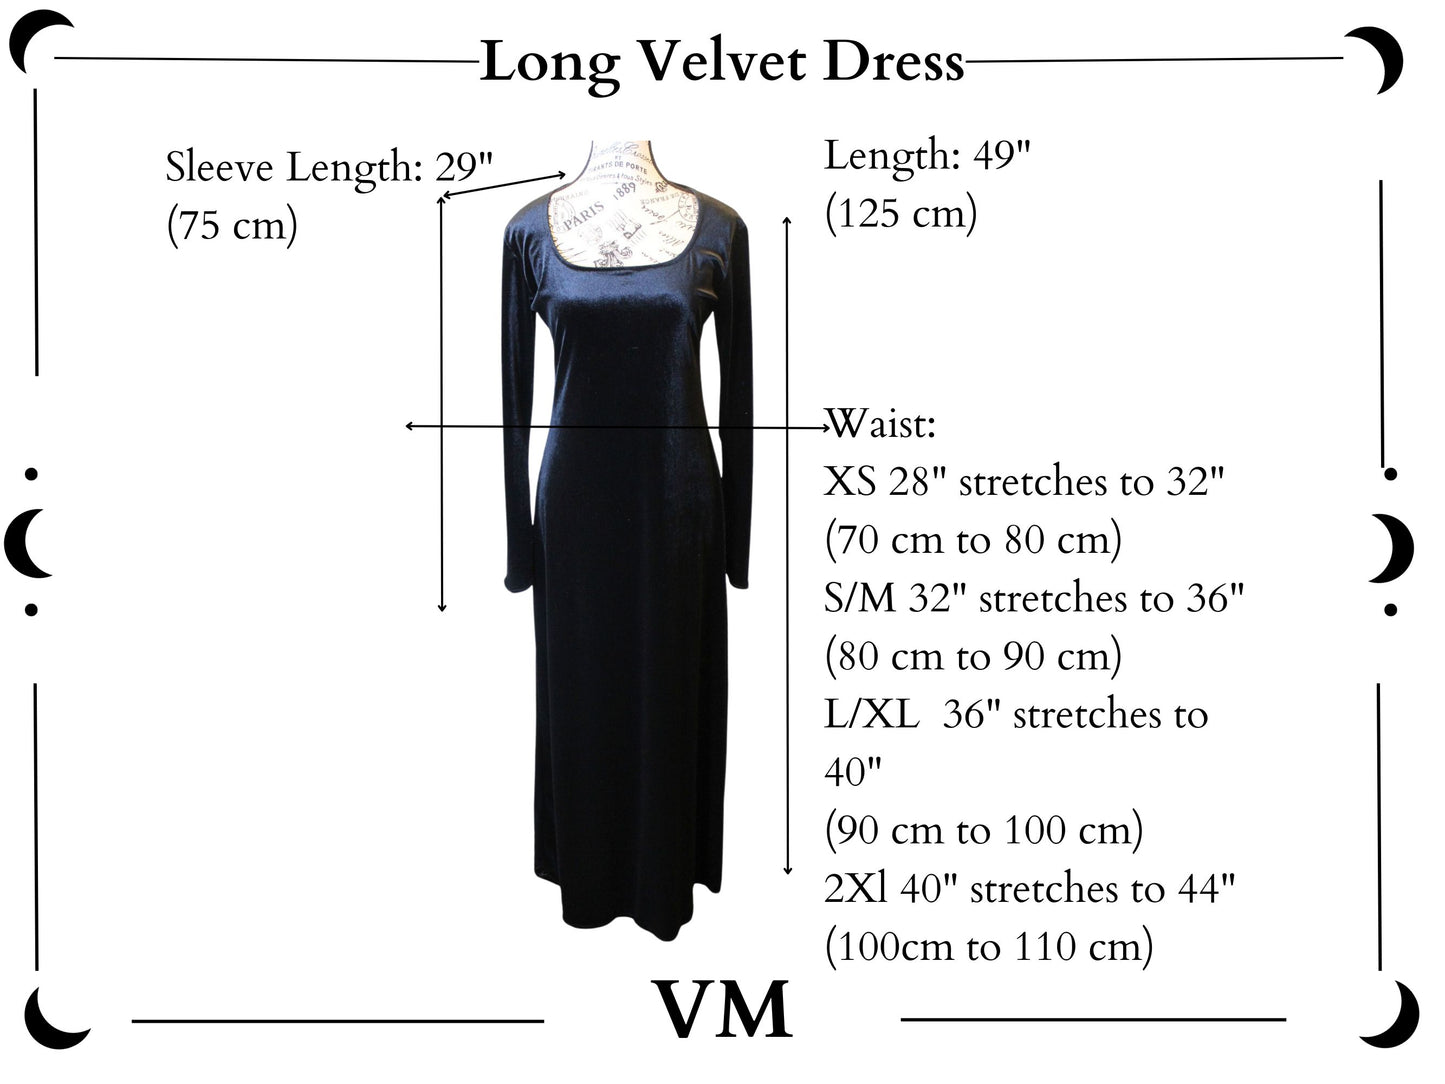 The VM Long Velvet Vamp Dress